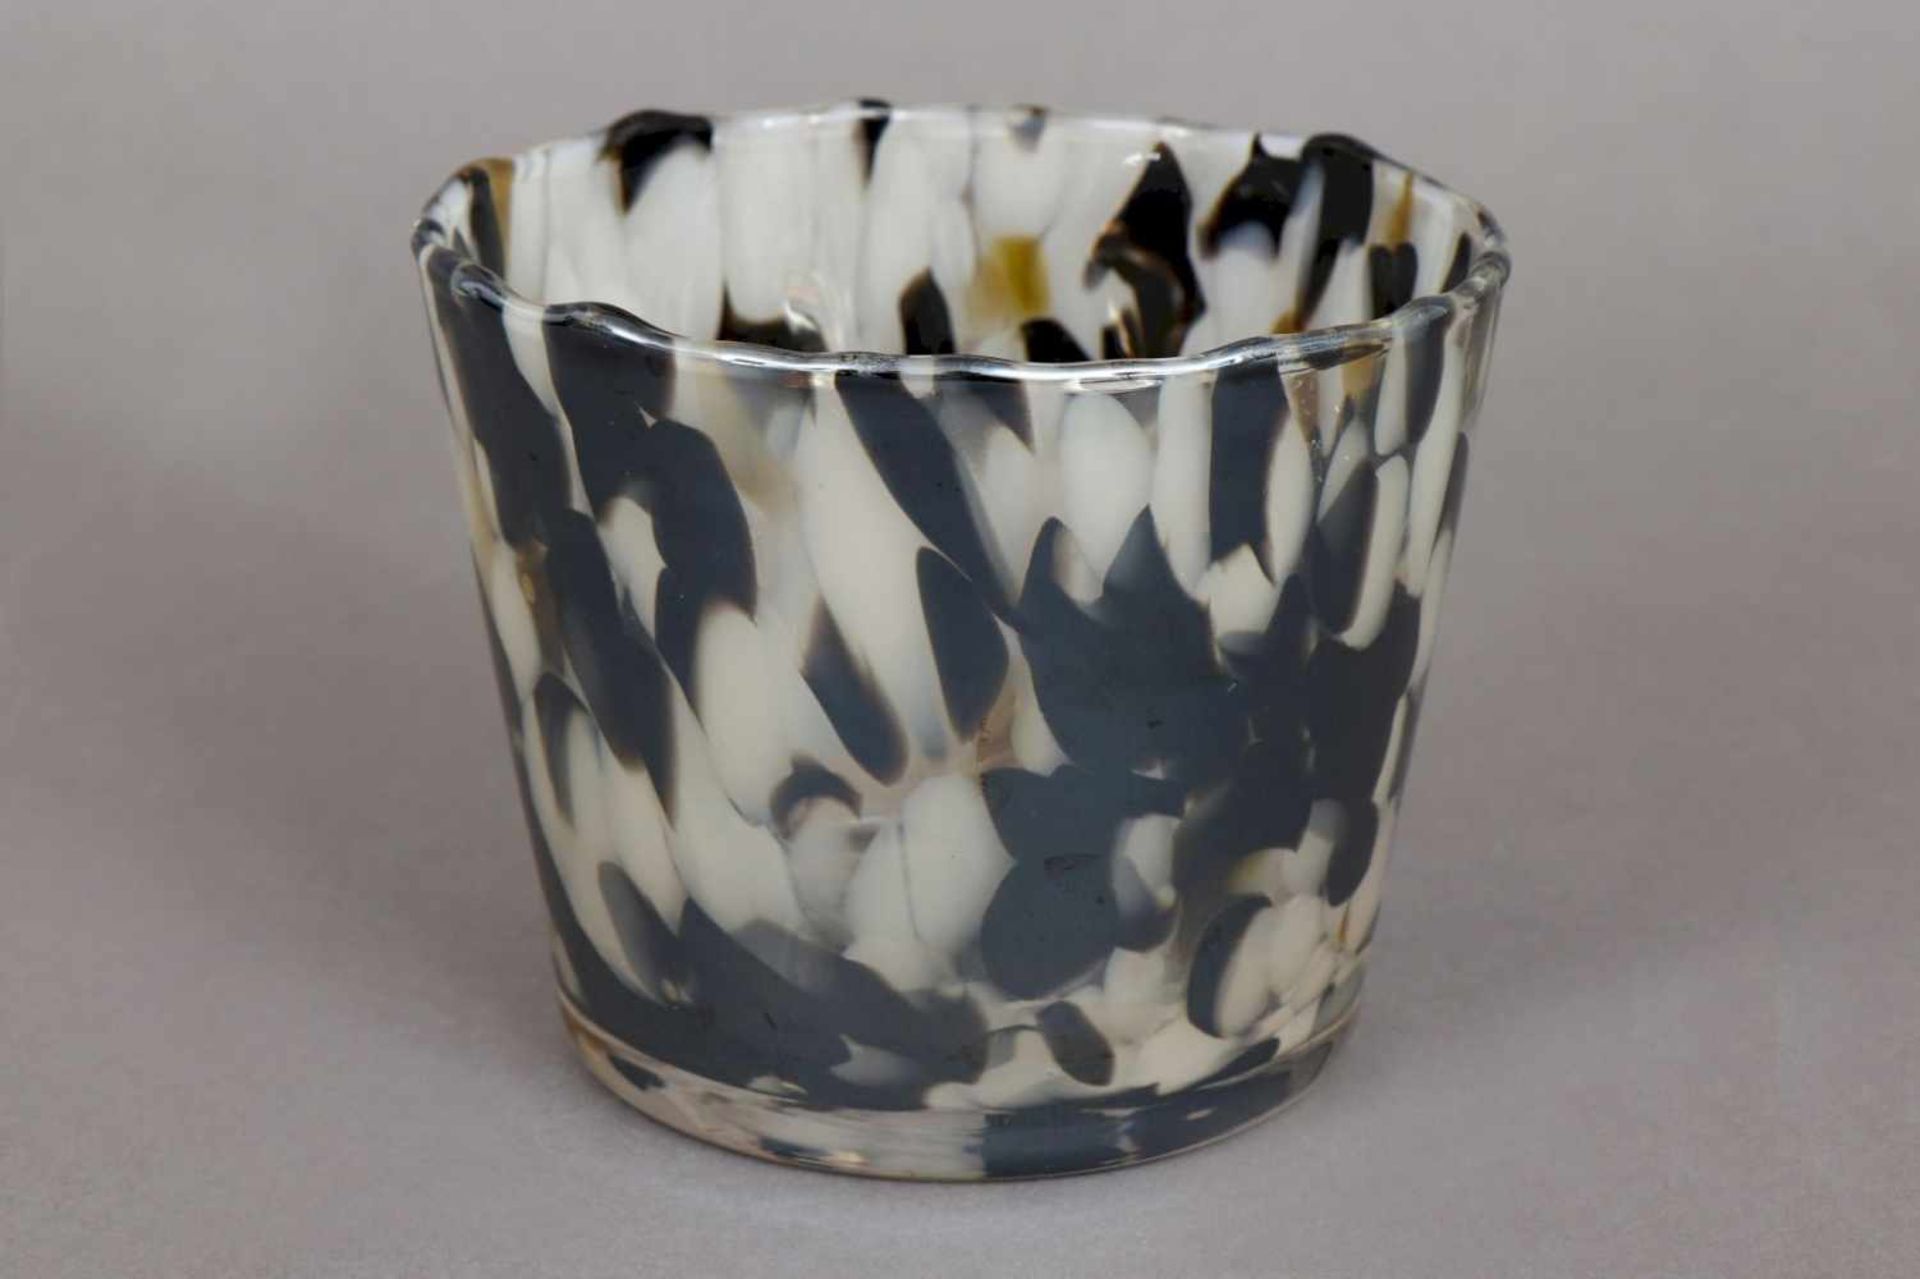 Bechervase im Stile Murano Glas, zylindrischer Korpus, schwarz-weiße Einsprenklungen, H ca. 10cm